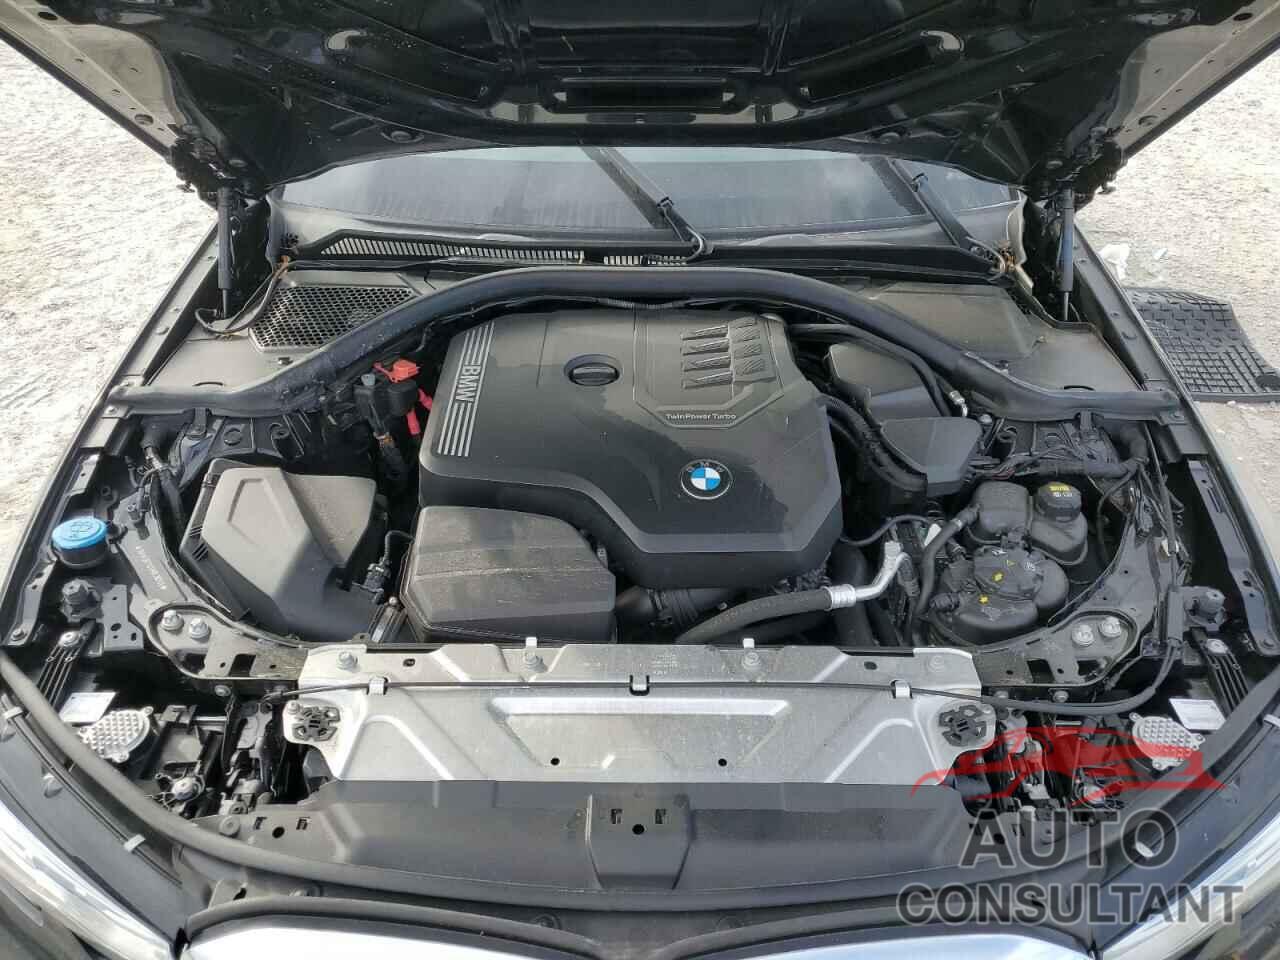 BMW 3 SERIES 2021 - 3MW5R7J03M8C18249